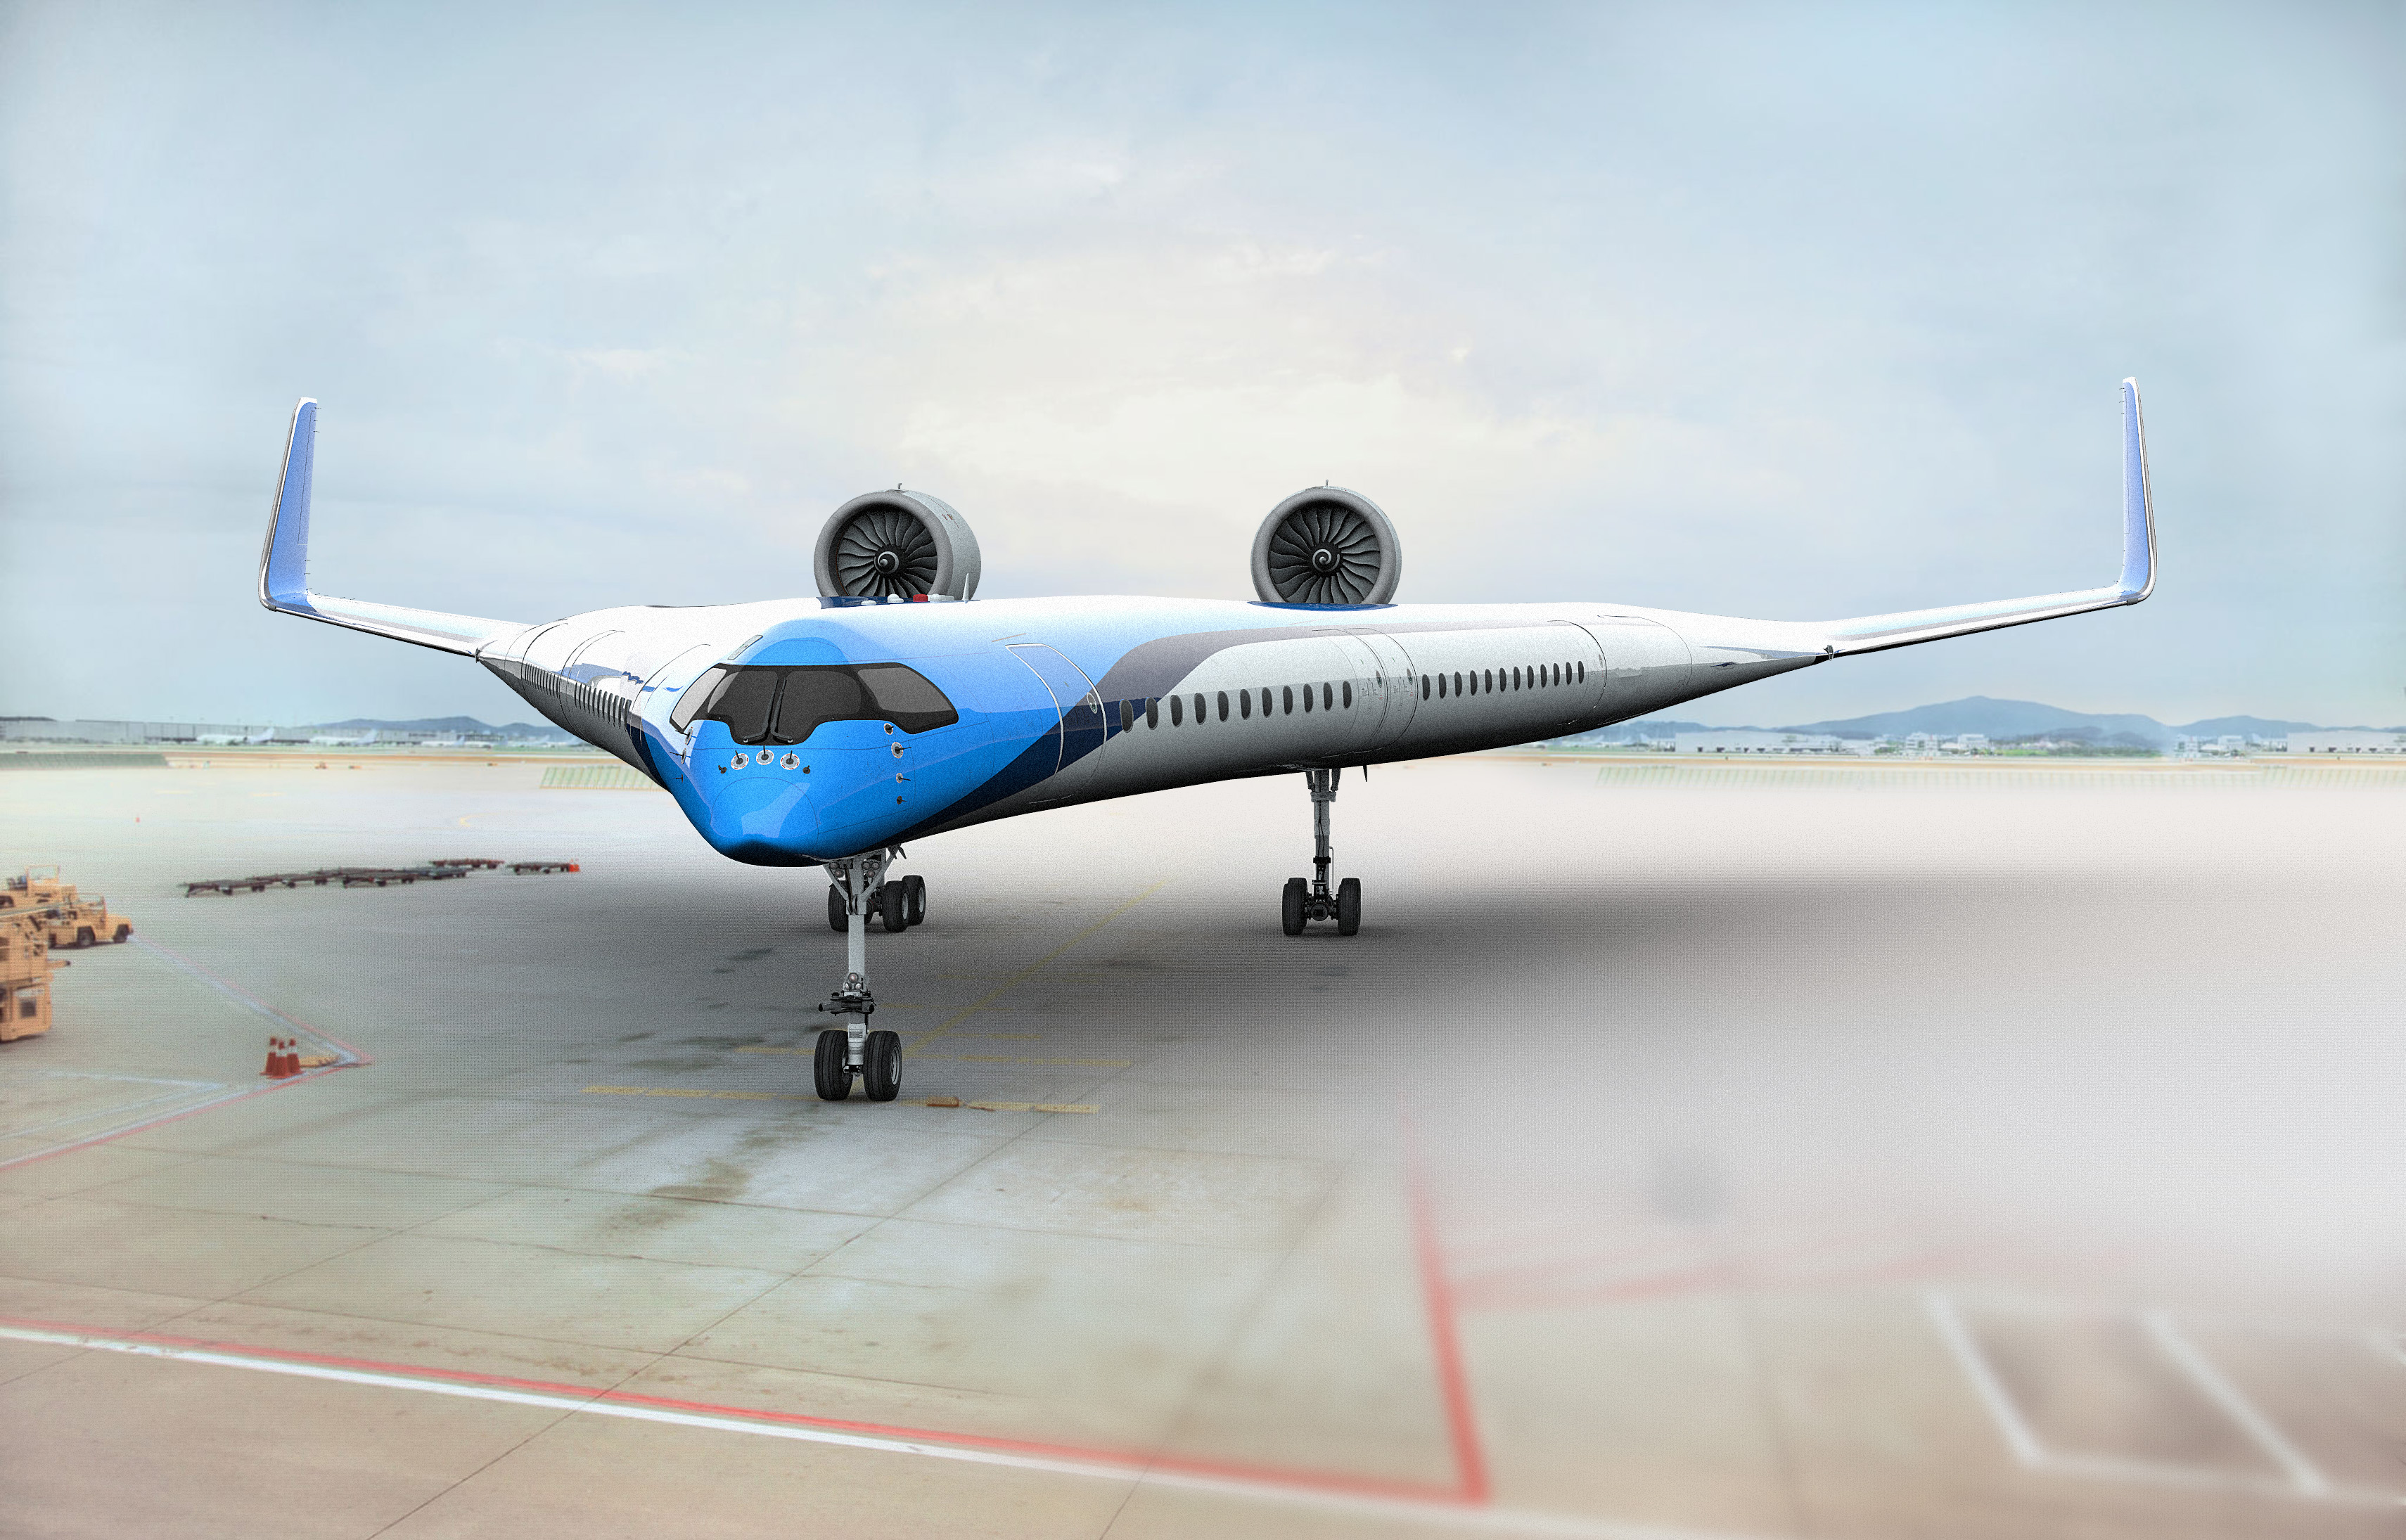 Flying-V samolot przyszłości w kształcie litery V. Konkurent A350